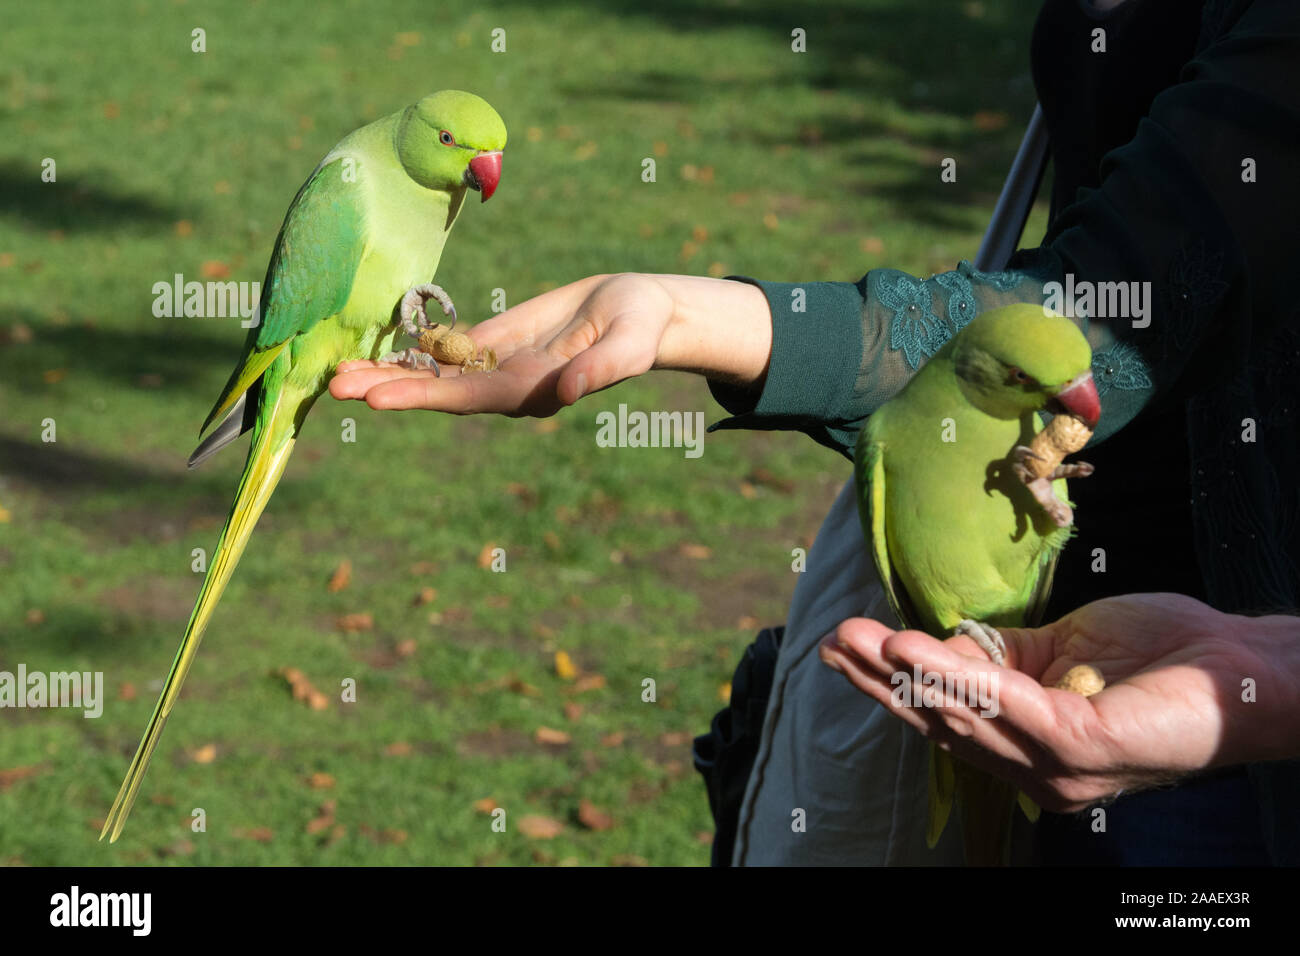 Ring necked parakeet werden von Hand mit Erdnüssen in Hyde Park, London, UK zugeführt. Diese wilde, nicht heimischen Arten sammelt im Park von Touristen gefüttert werden. Stockfoto